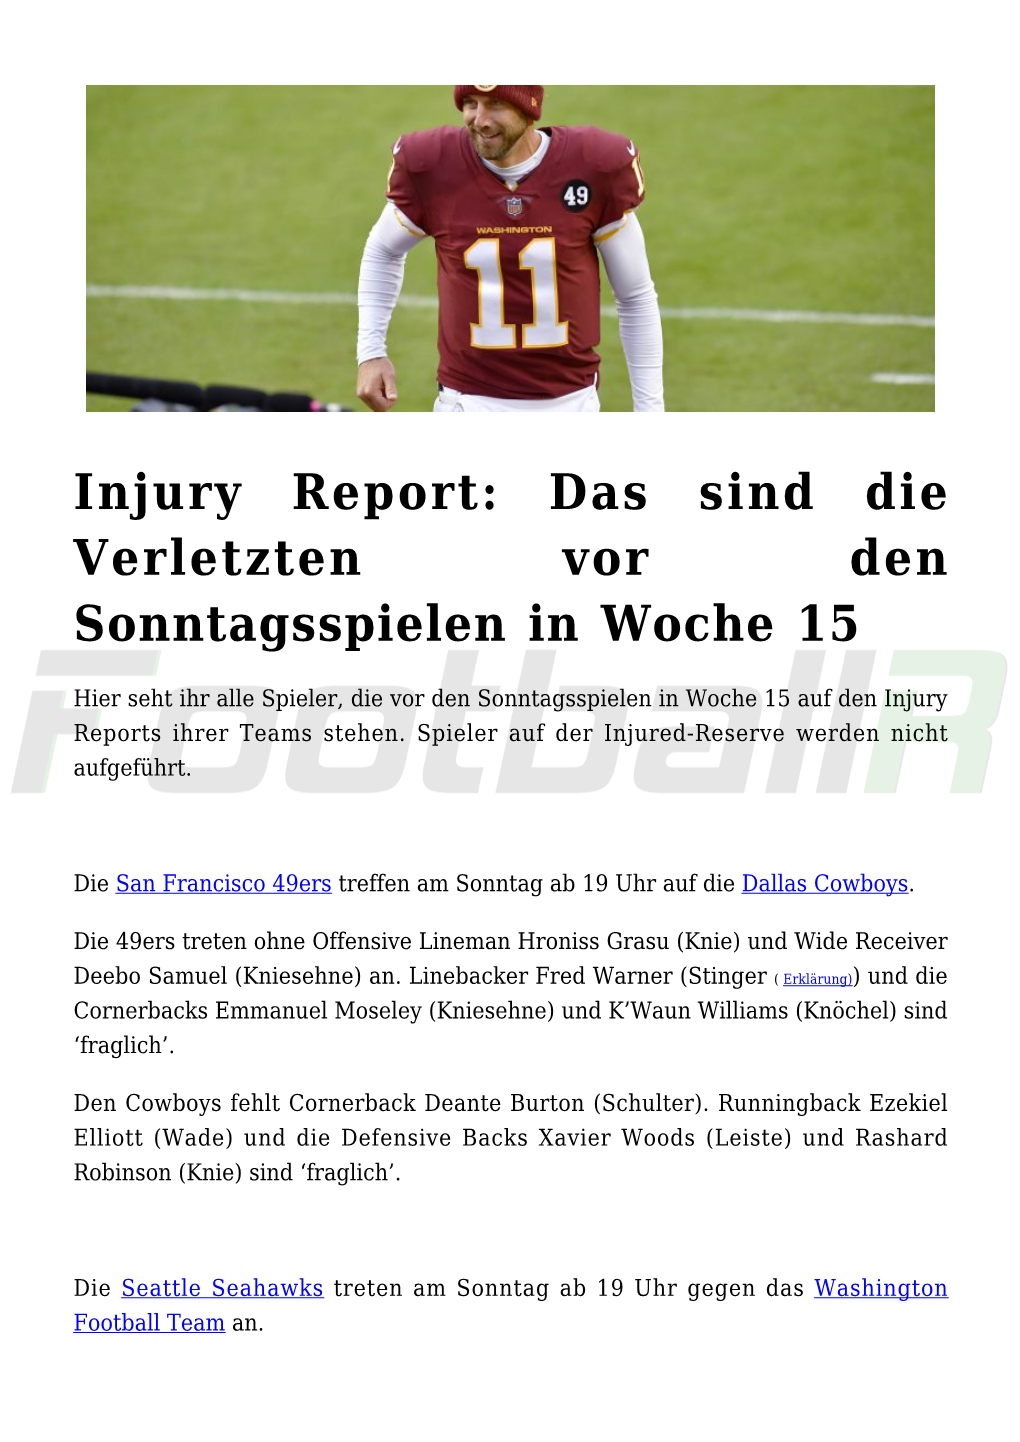 Injury Report: Das Sind Die Verletzten Vor Den Sonntagsspielen in Woche 15